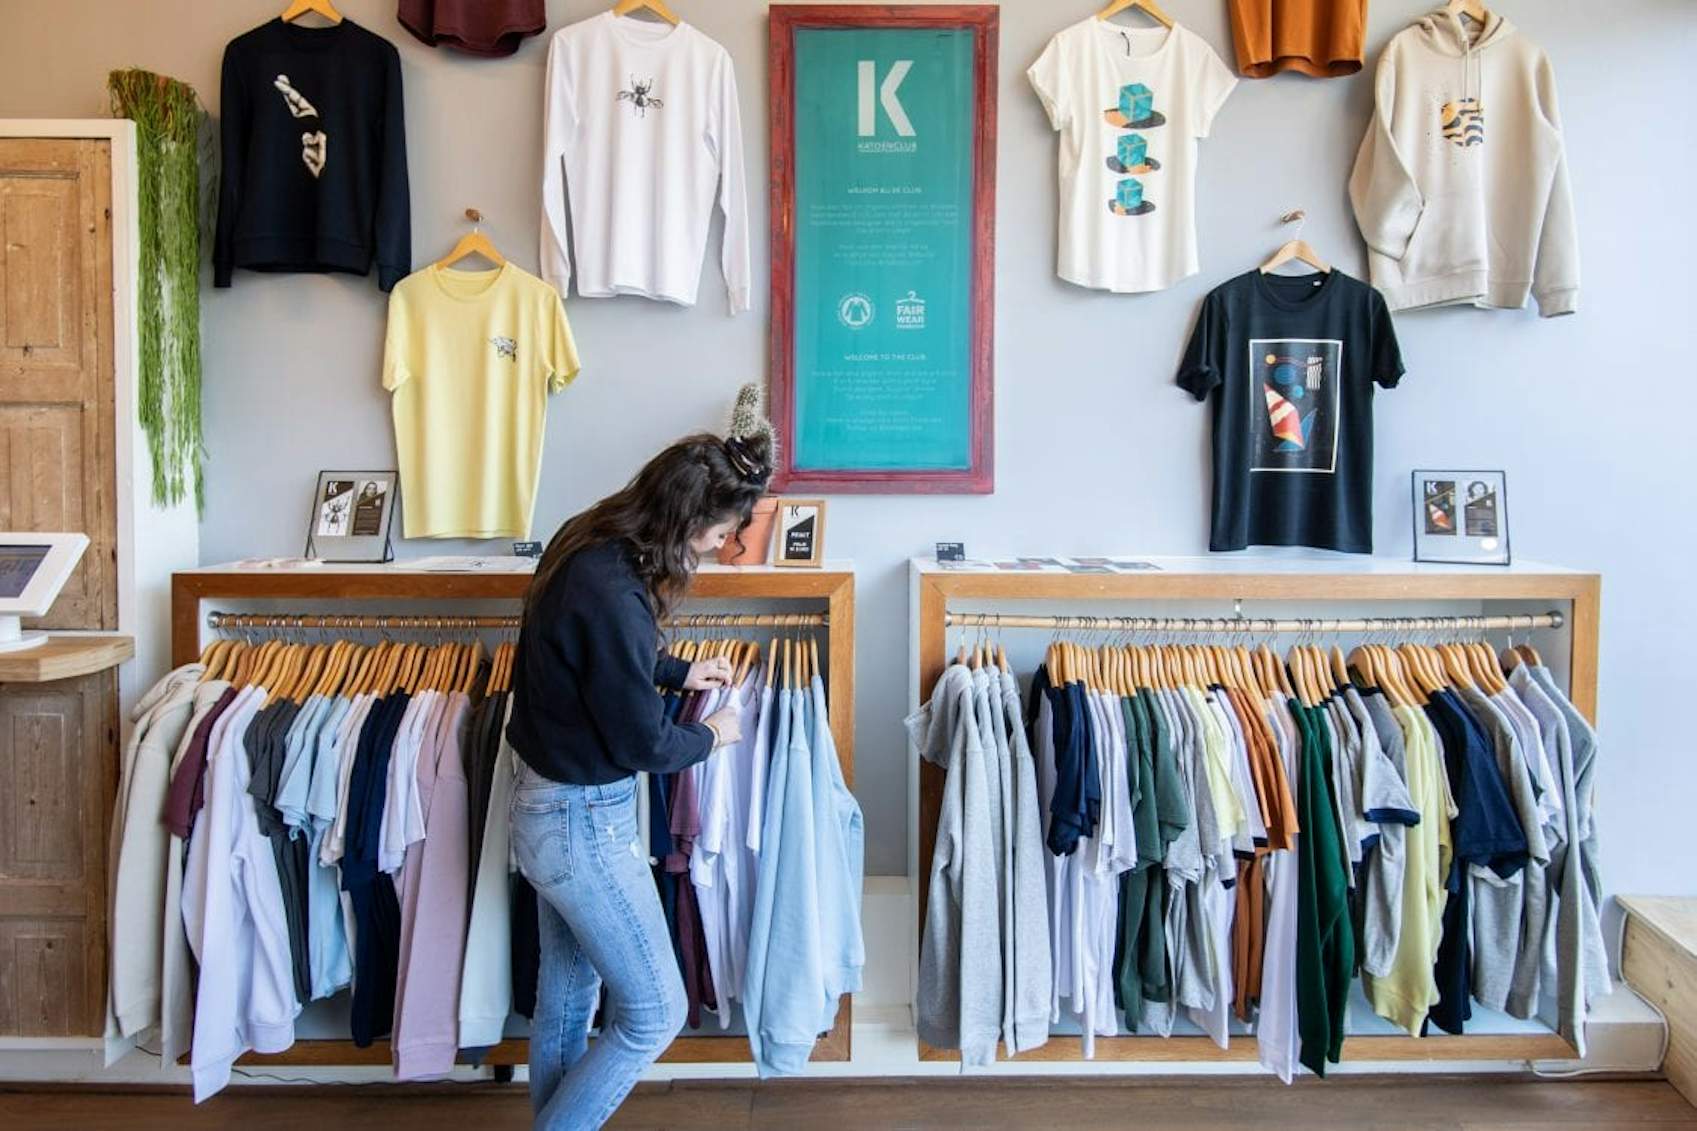 Geschikt aan de andere kant, Poëzie Op bezoek bij Katoenfabriek: 'Je kan overal t-shirtjes bestellen, maar wij  voegen een andere waarde toe' | De Utrechtse Internet Courant